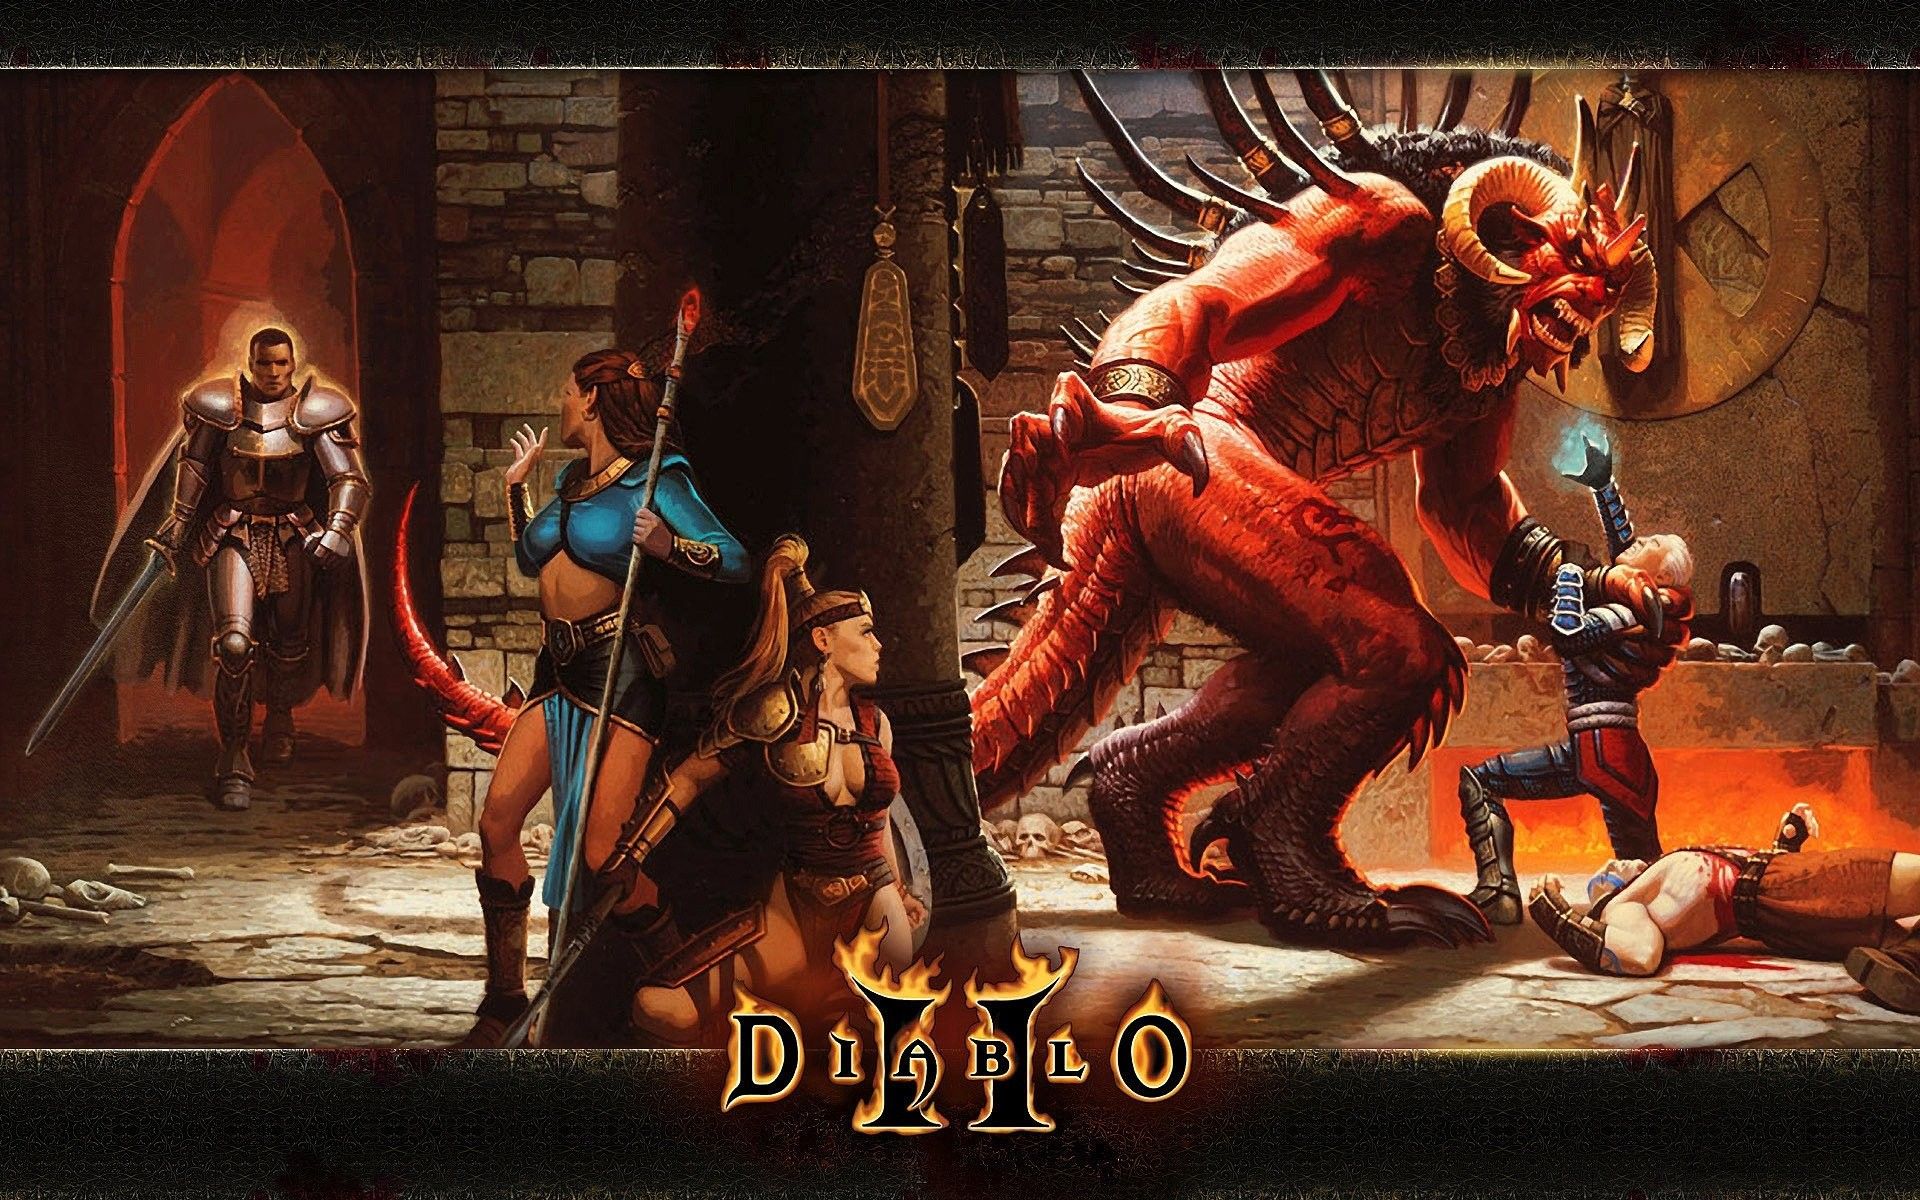 Resurrected Diablo 2 Wallpapers